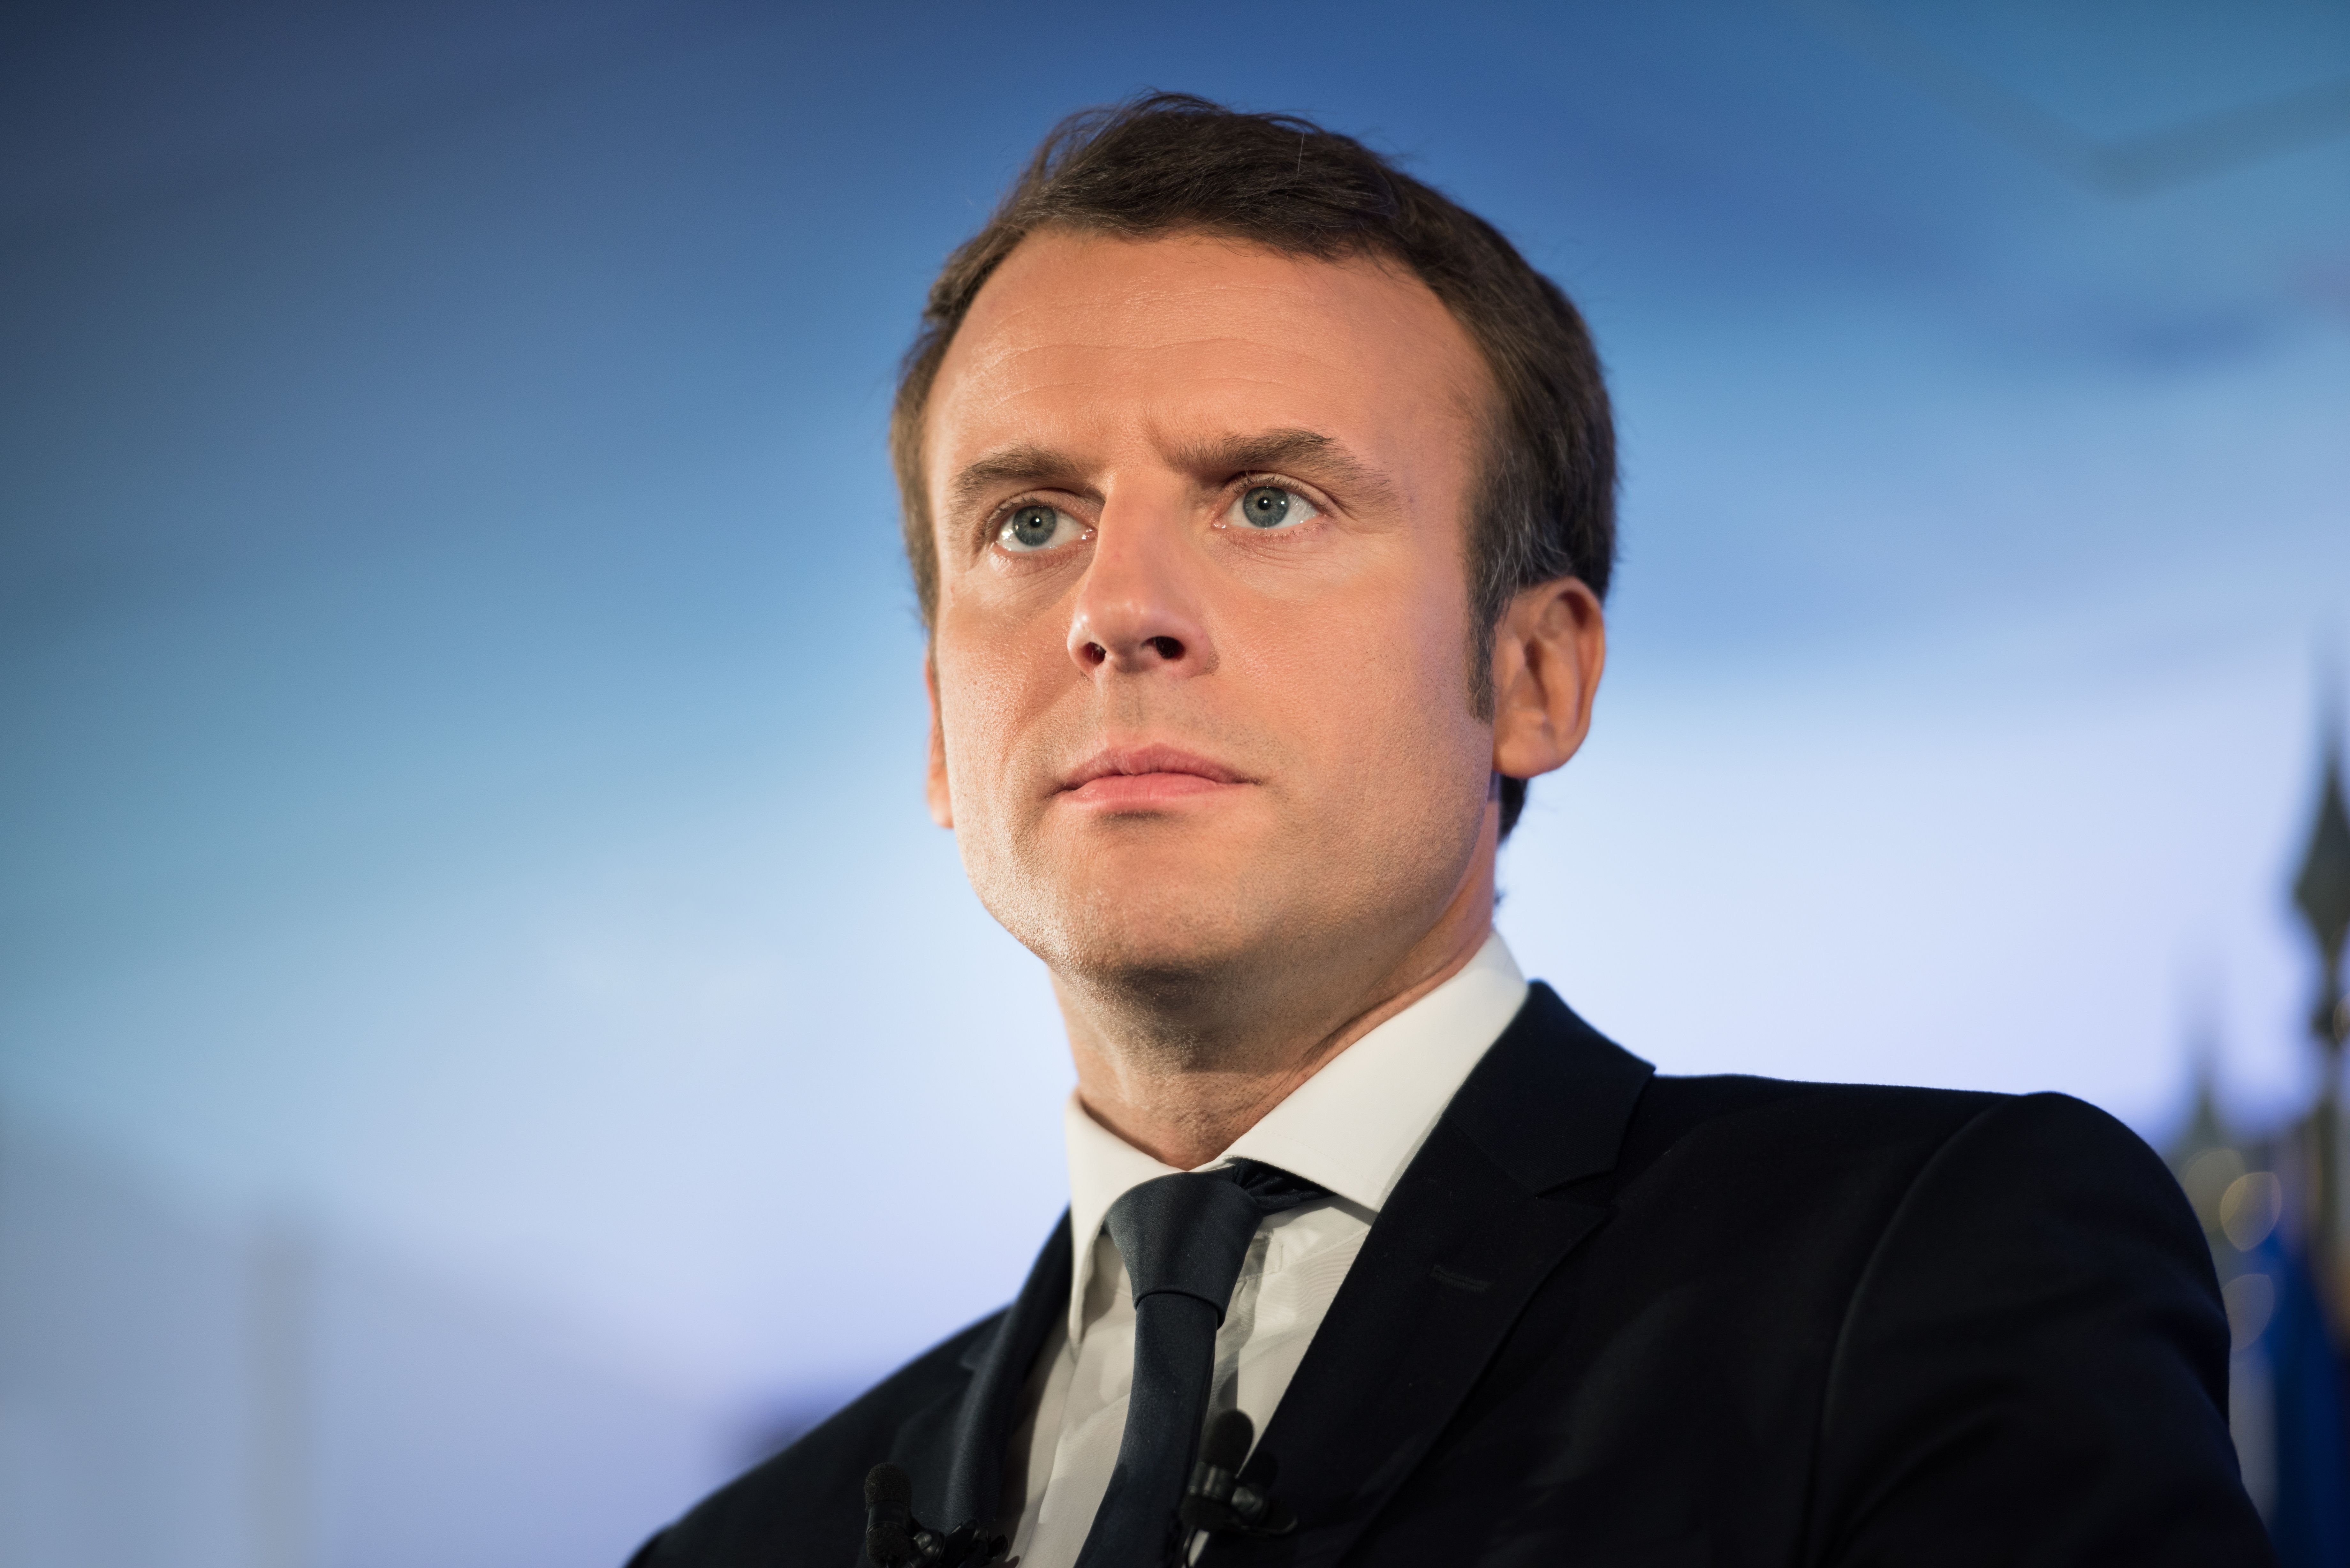 Le président de la République Emmanuel Macron. l Source : Shutterstock